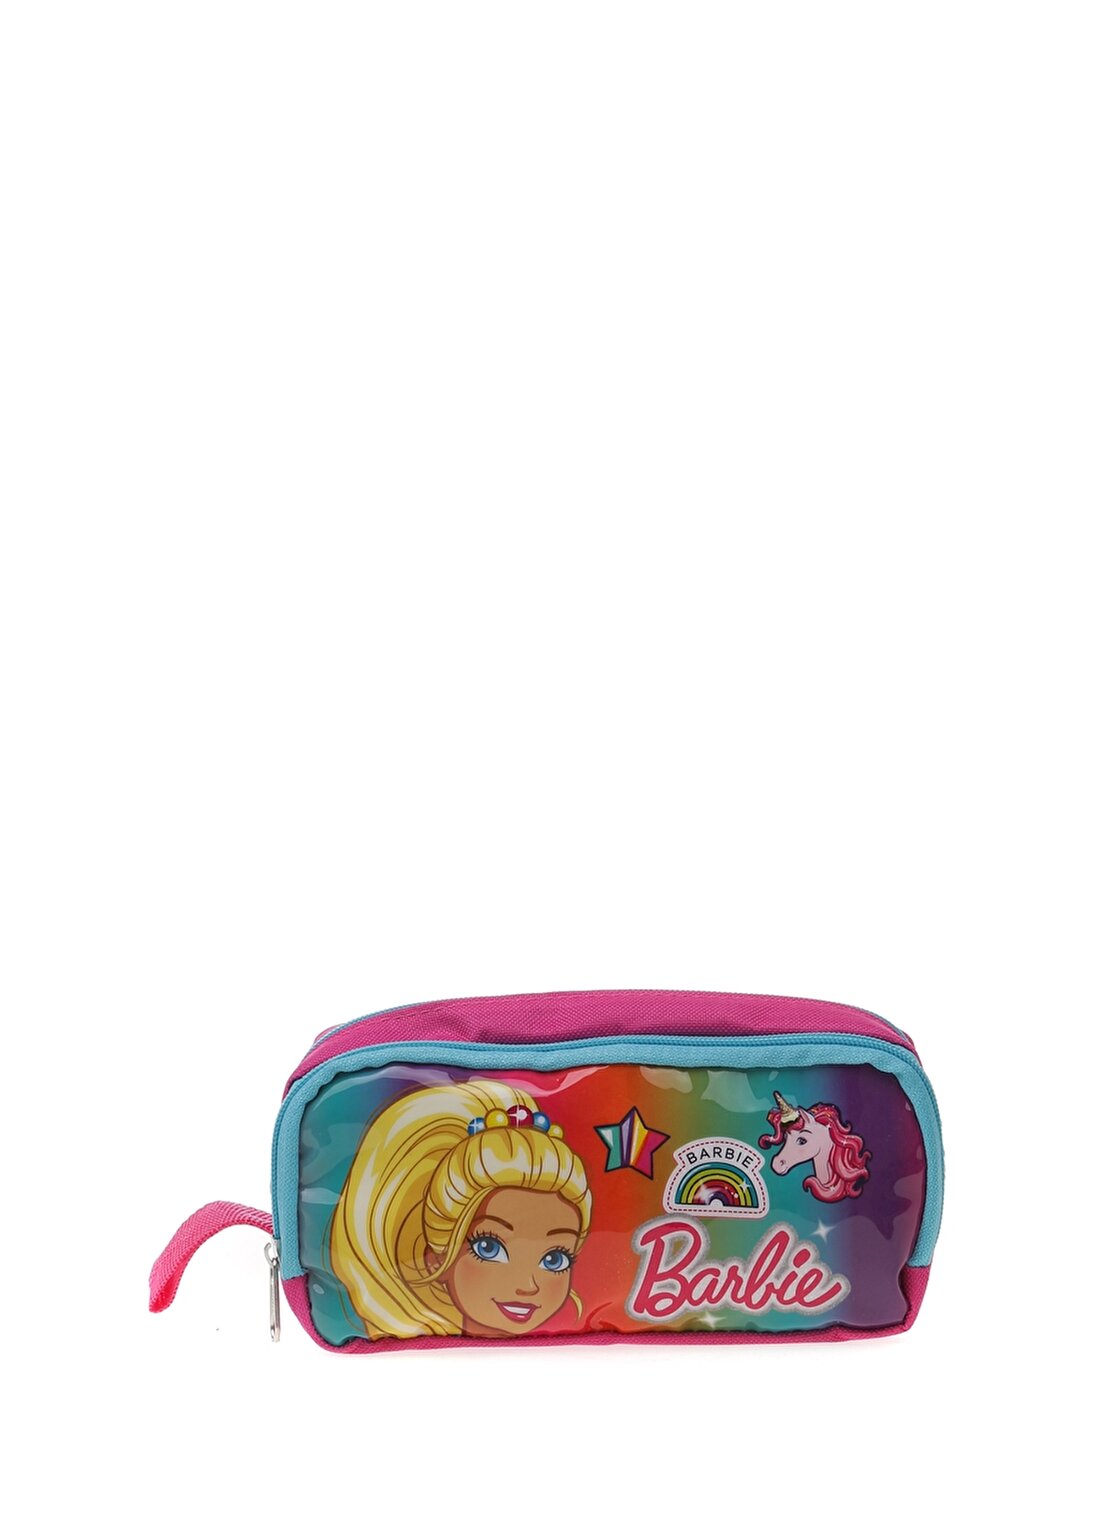 Hakan Çanta 96800 Barbie Pembe Kız Çocuk Kalem Çantası